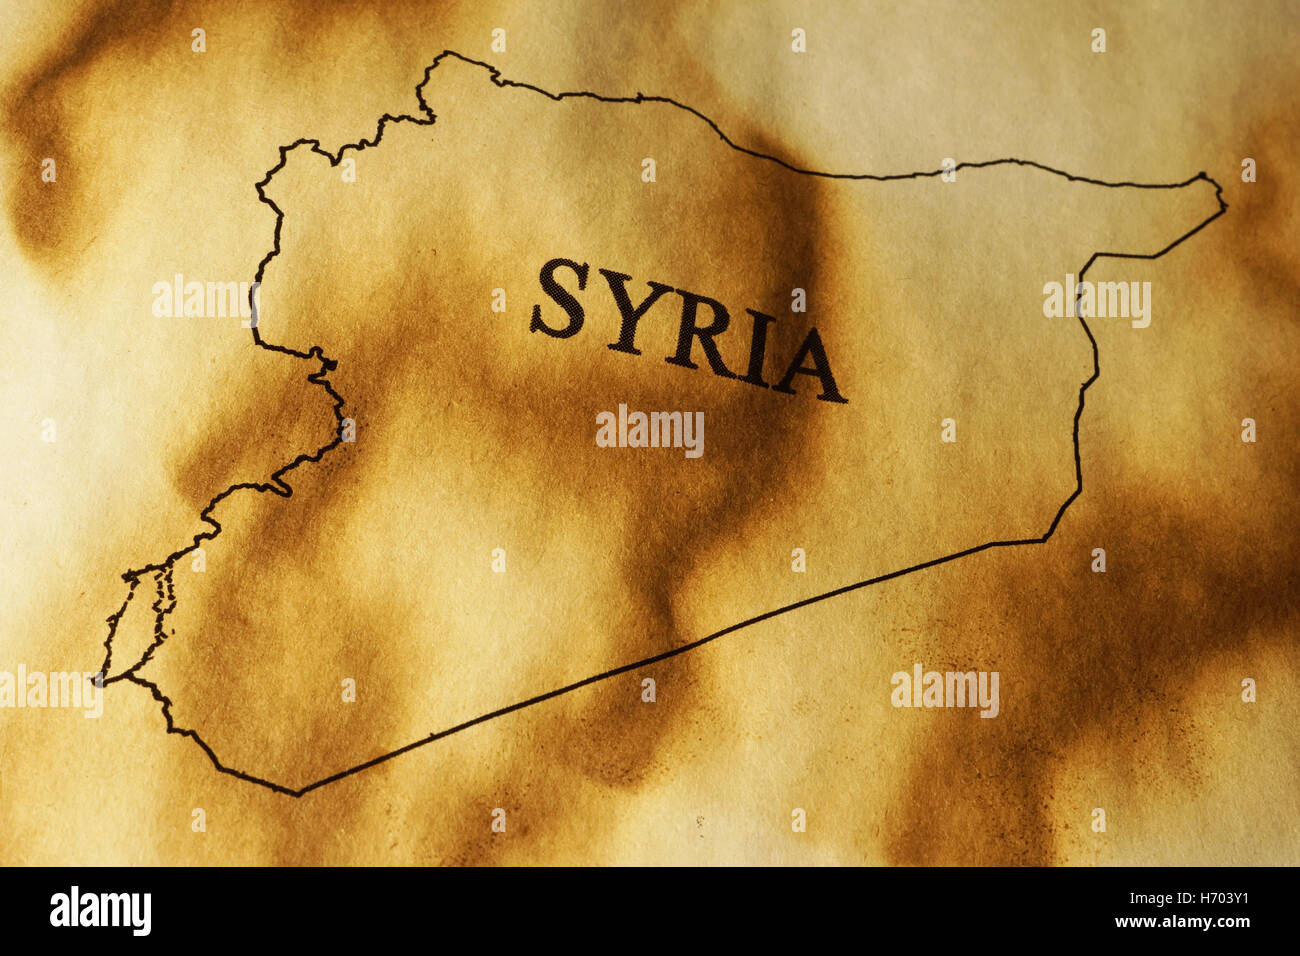 La Syrie sur une carte papier carbonisé. Concept de conflit syrien Banque D'Images